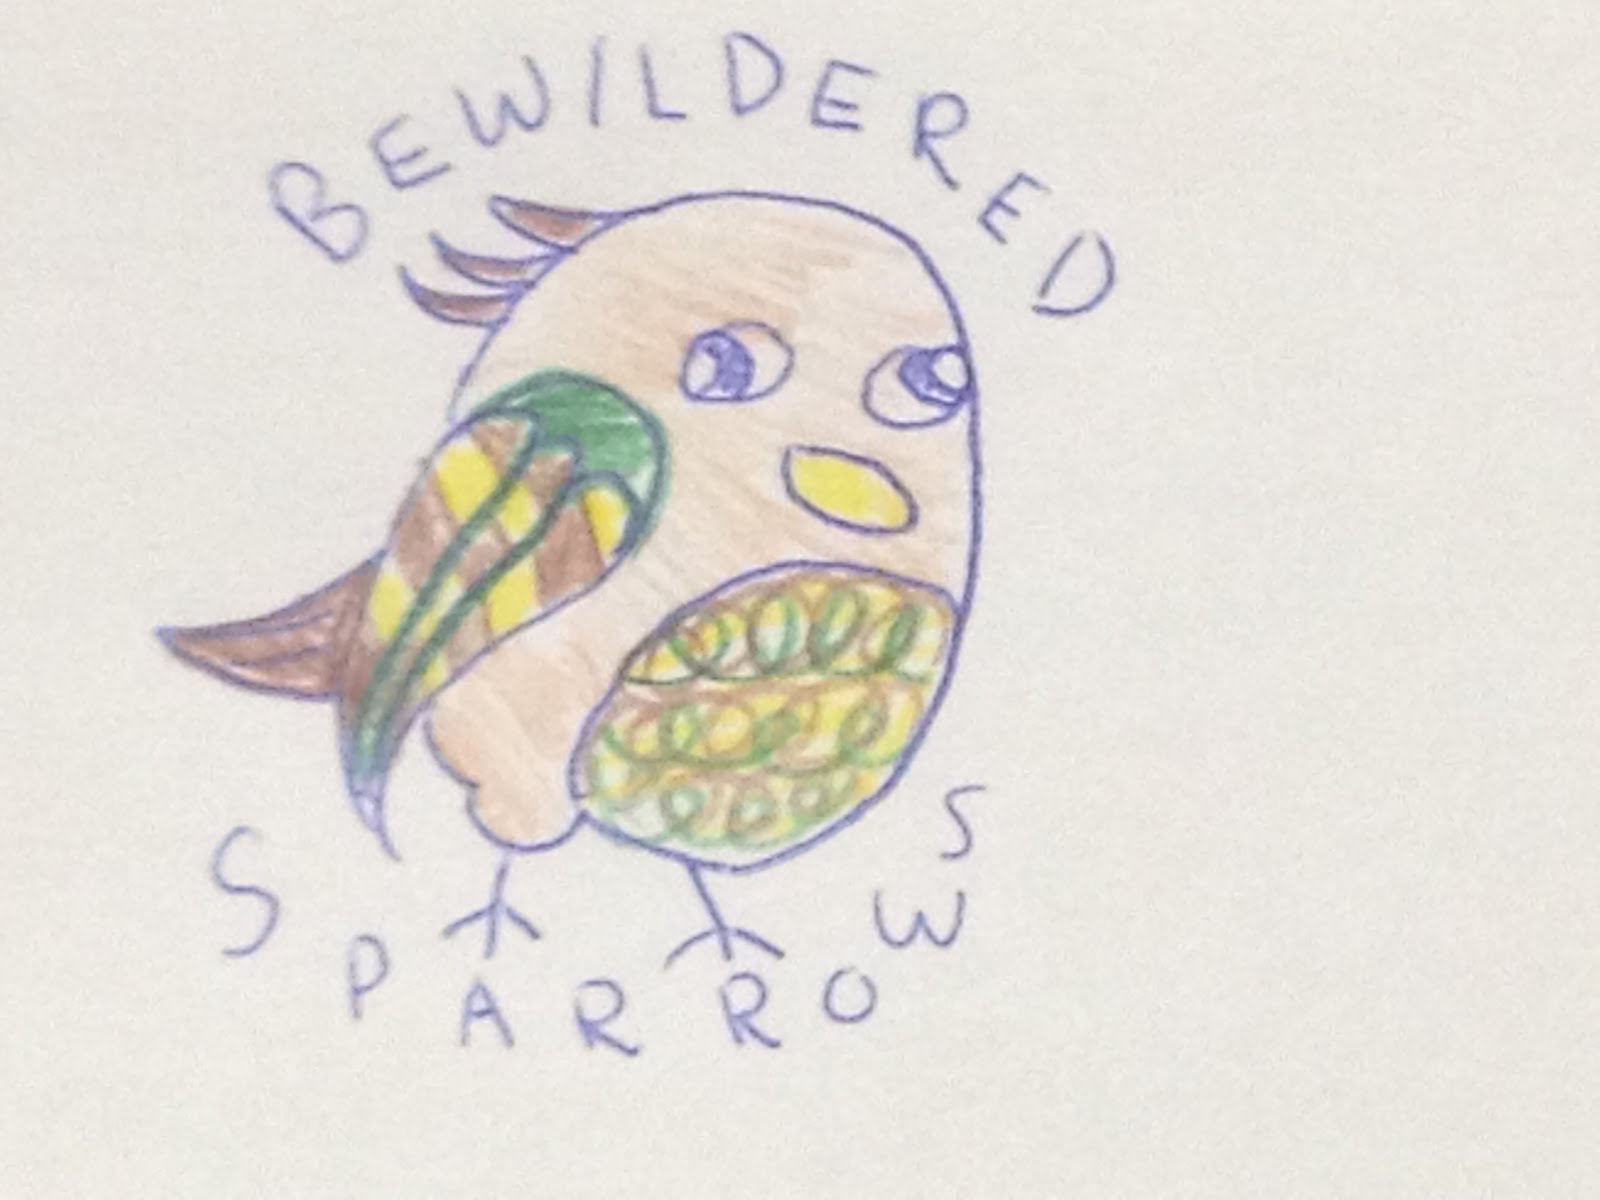 sparrows